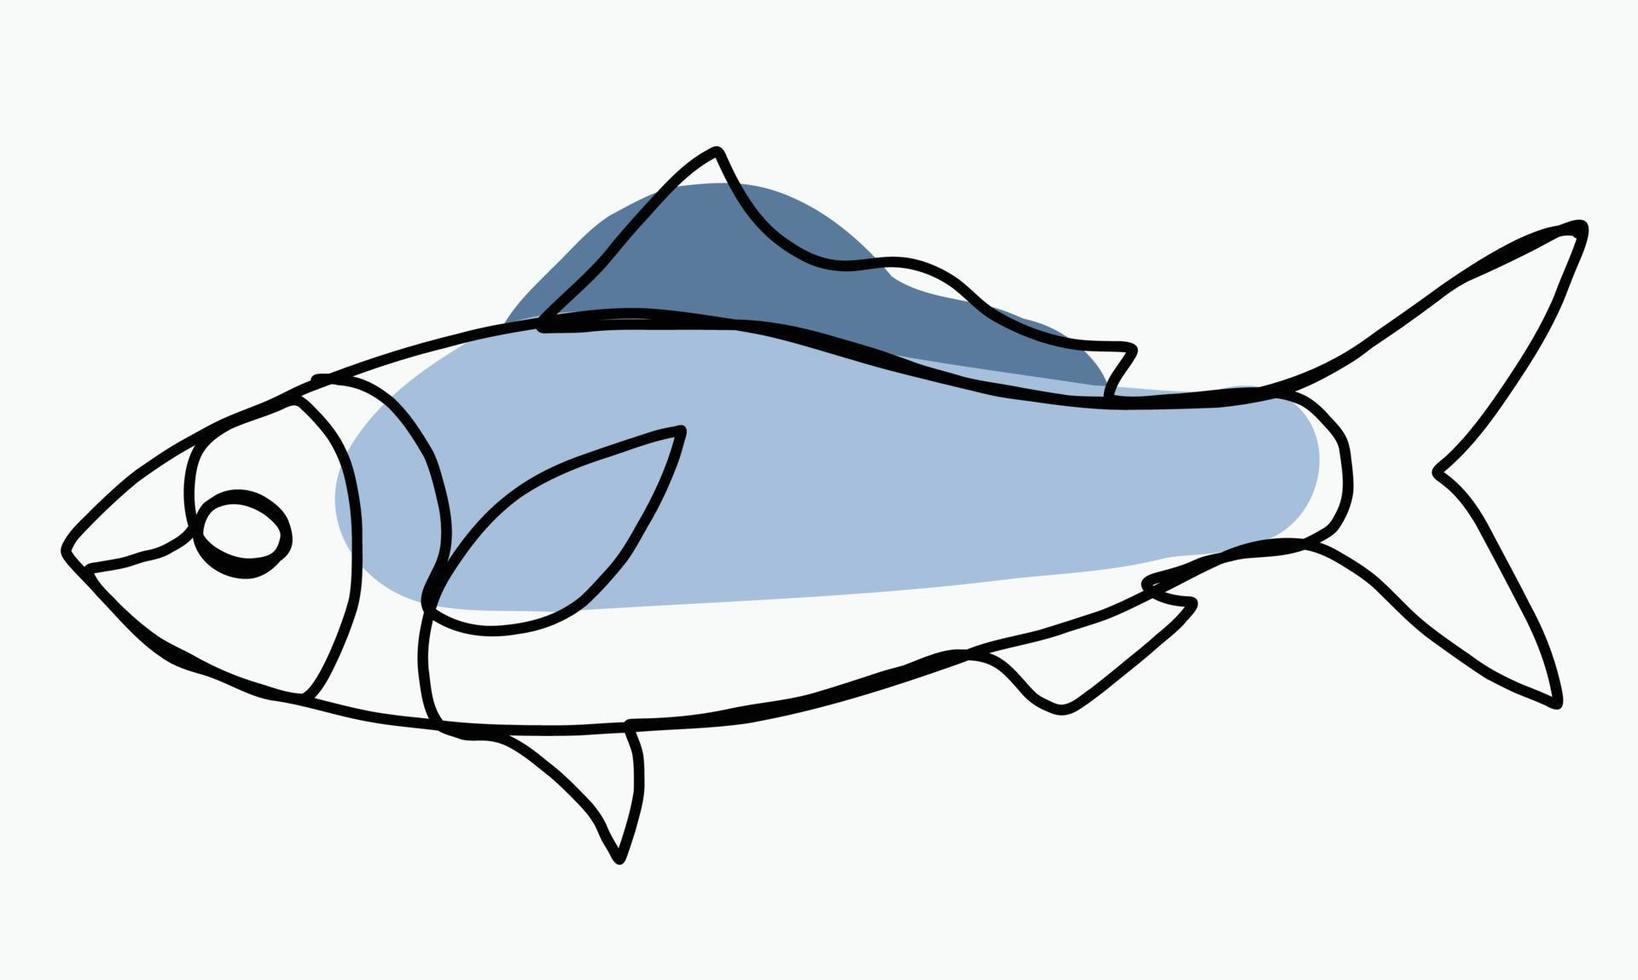 doodle frihand skiss kontinuerlig ritning av fisk. vektor